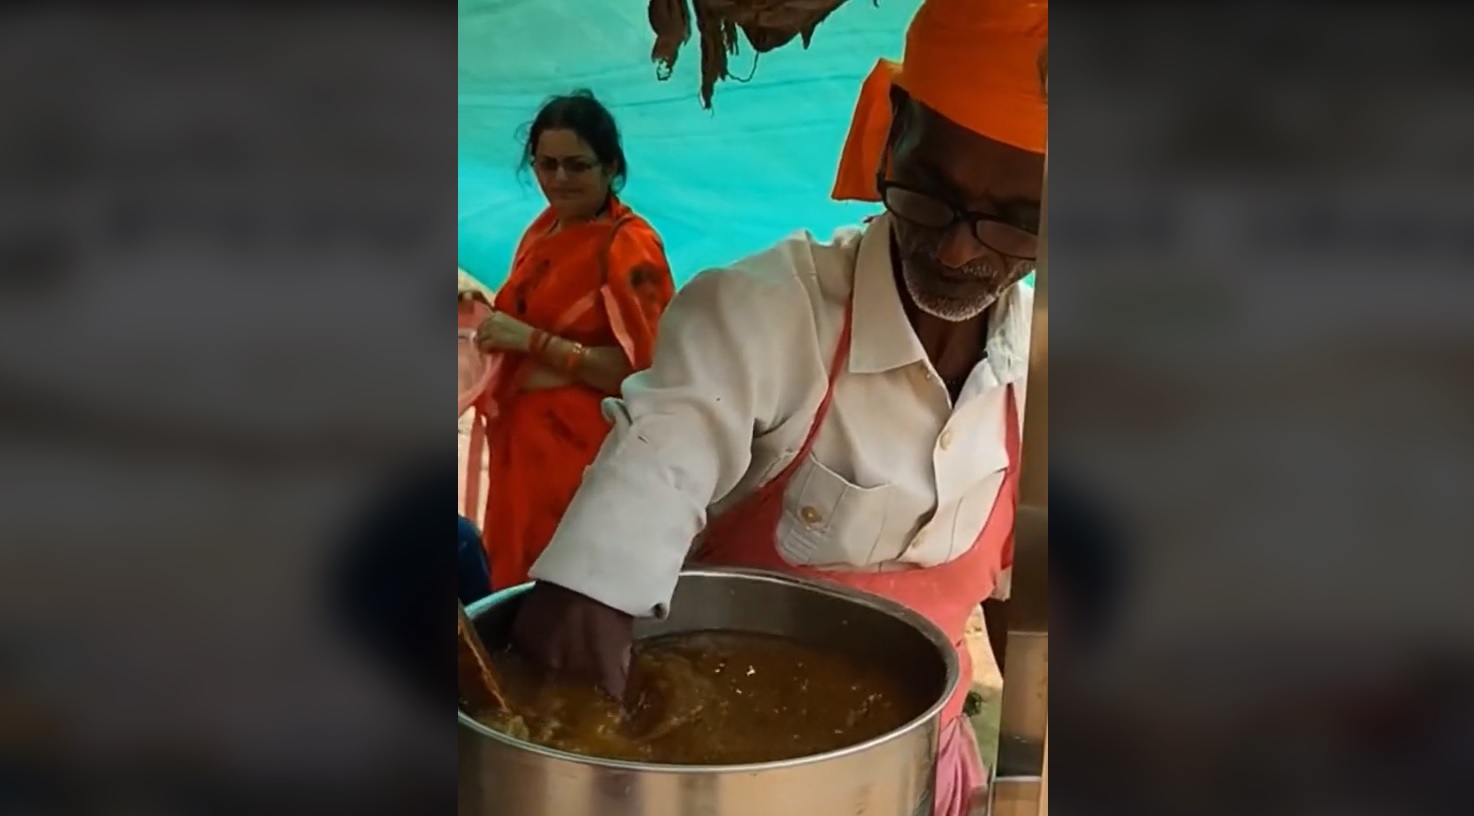 Πόση αηδία αντέχεις: Έχεις δει τι street food τρώνε στην Ινδία;